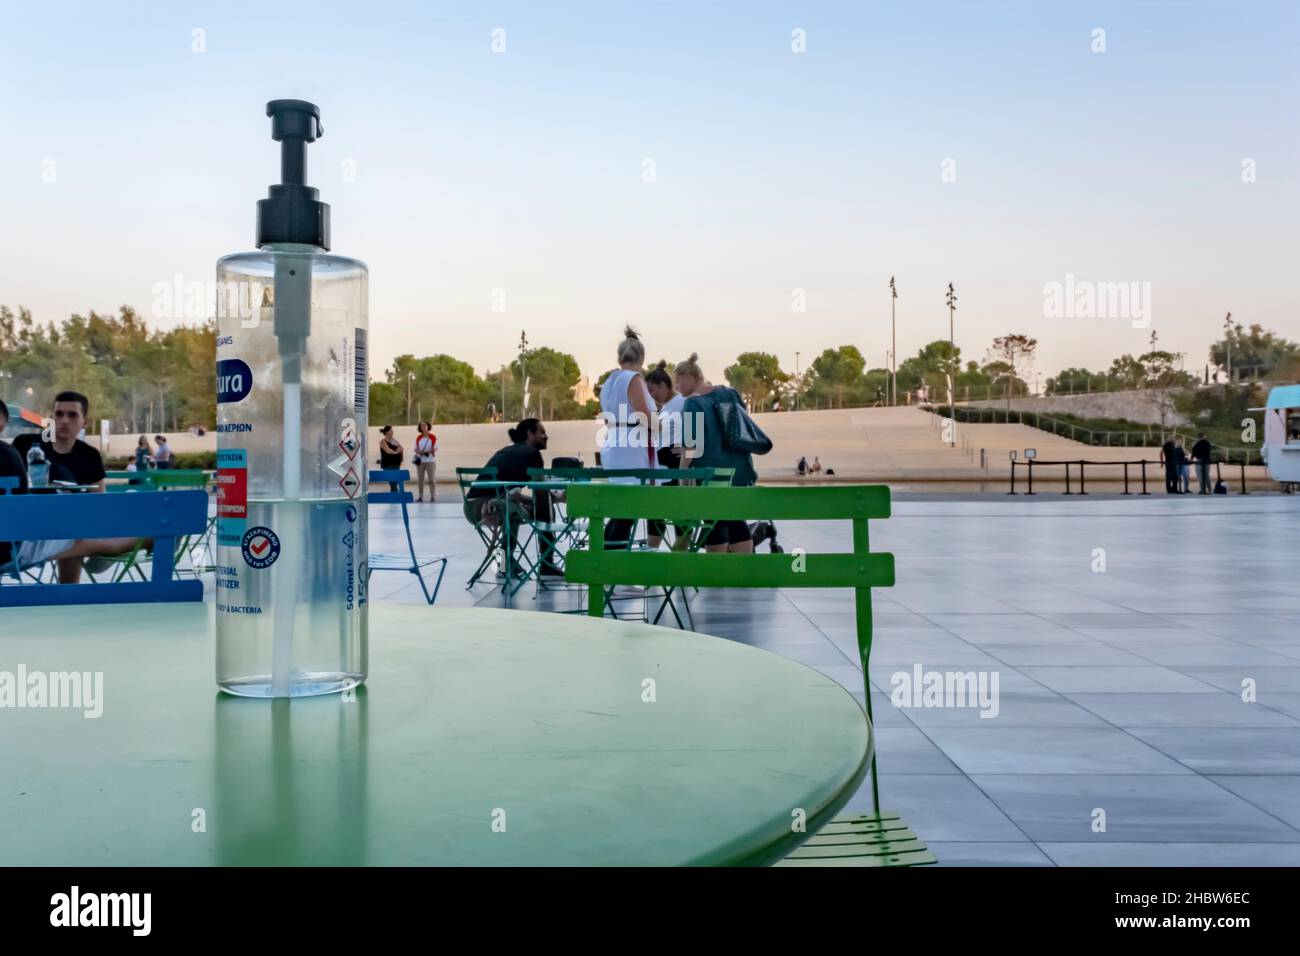 Athènes, Grèce - 27 septembre 2021 : grande bouteille d'assainisseur pour les mains avec pompe sur la table.Le café de rue à l'époque du coronavirus a rouvert ses portes en été. Banque D'Images